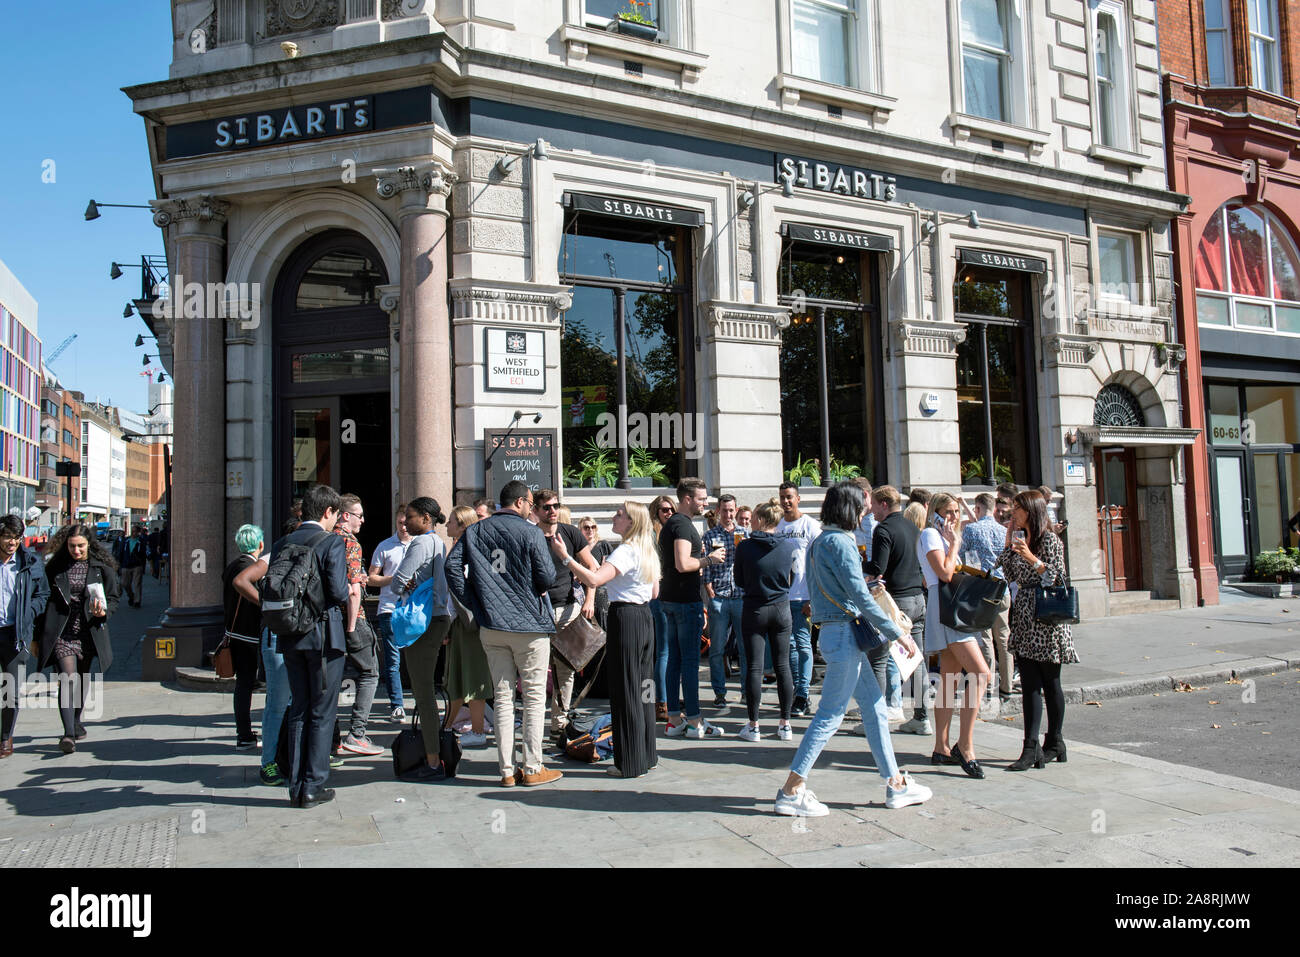 Las personas que beben fuera de St Bart's public house, pub o bar, West Smithfield, la ciudad de Londres. Foto de stock